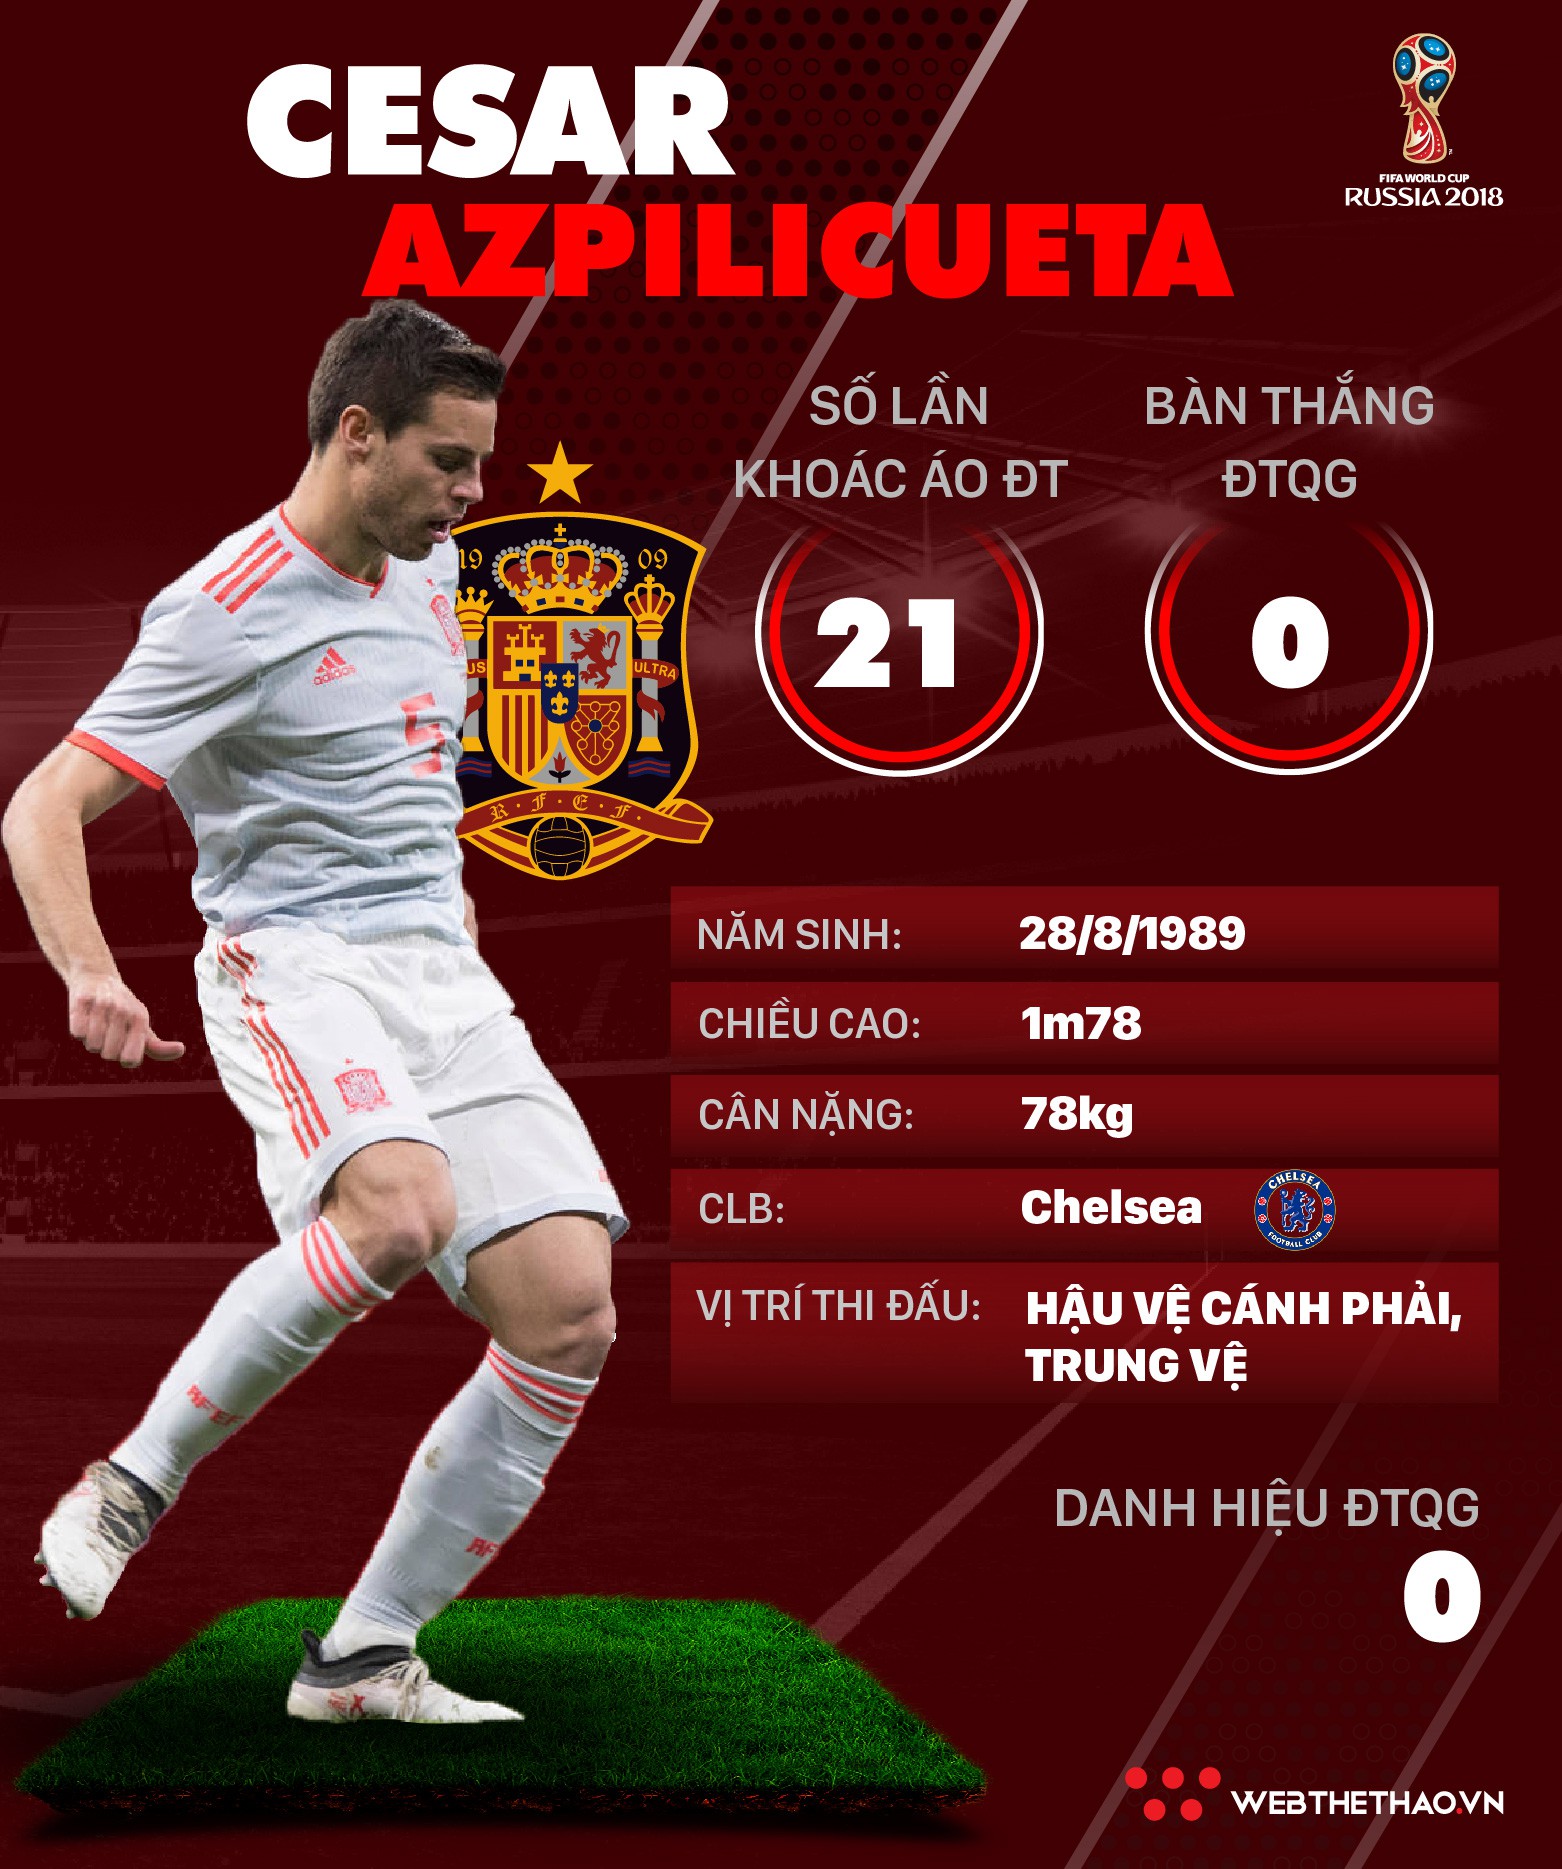 Thông tin cầu thủ Cesar Azpilicueta của ĐT Tây Ban Nha dự World Cup 2018 - Ảnh 1.